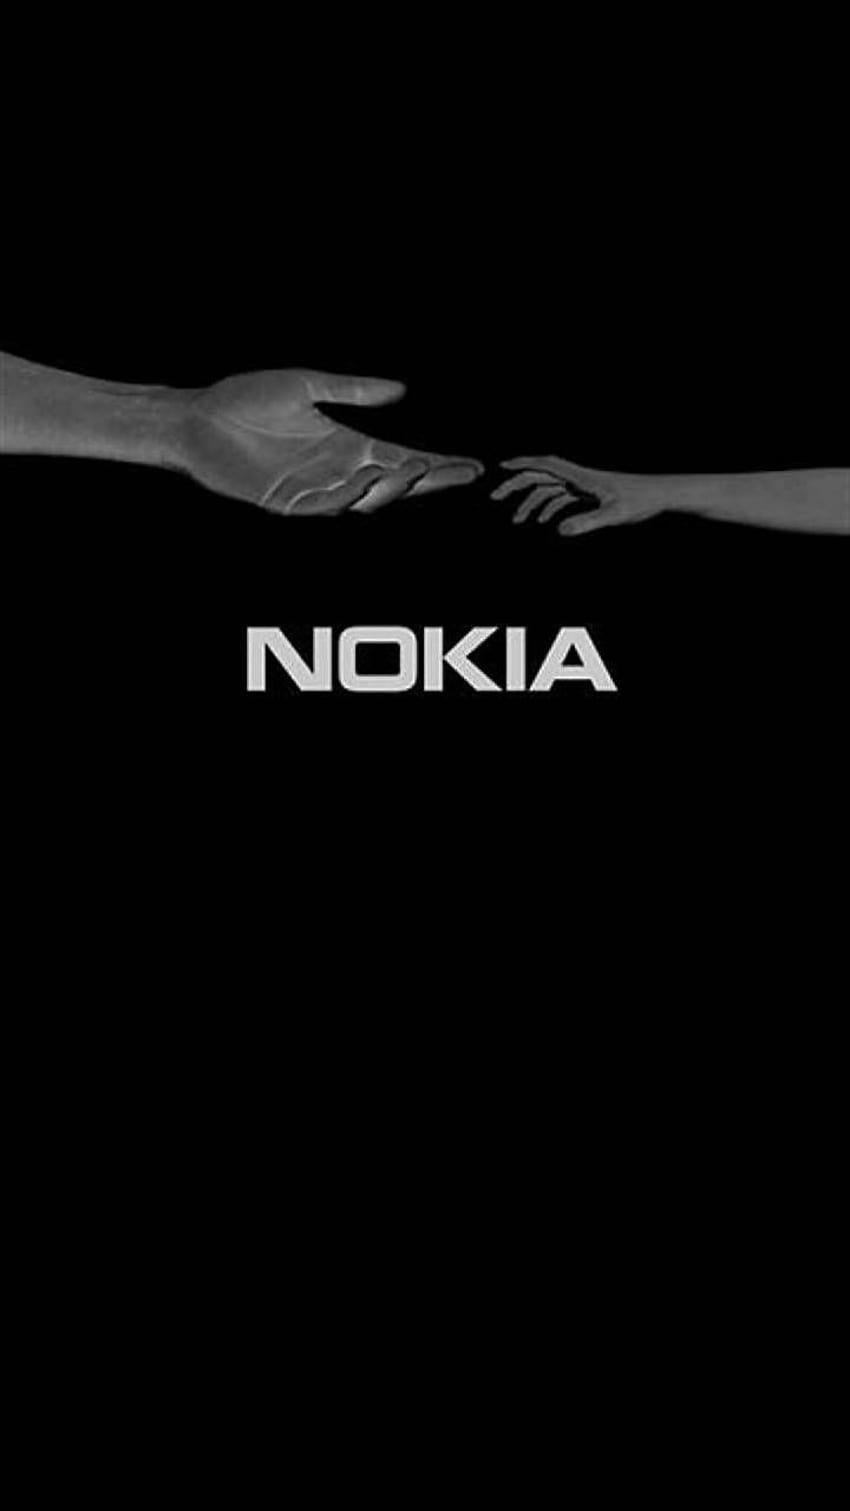 Nhấp vào hình ảnh để khám phá chiếc điện thoại Nokia HD đẹp nhất từ trước đến nay. Công nghệ hình ảnh cao cấp sẽ cho bạn trải nghiệm thú vị với màn hình sắc nét và rực rỡ.